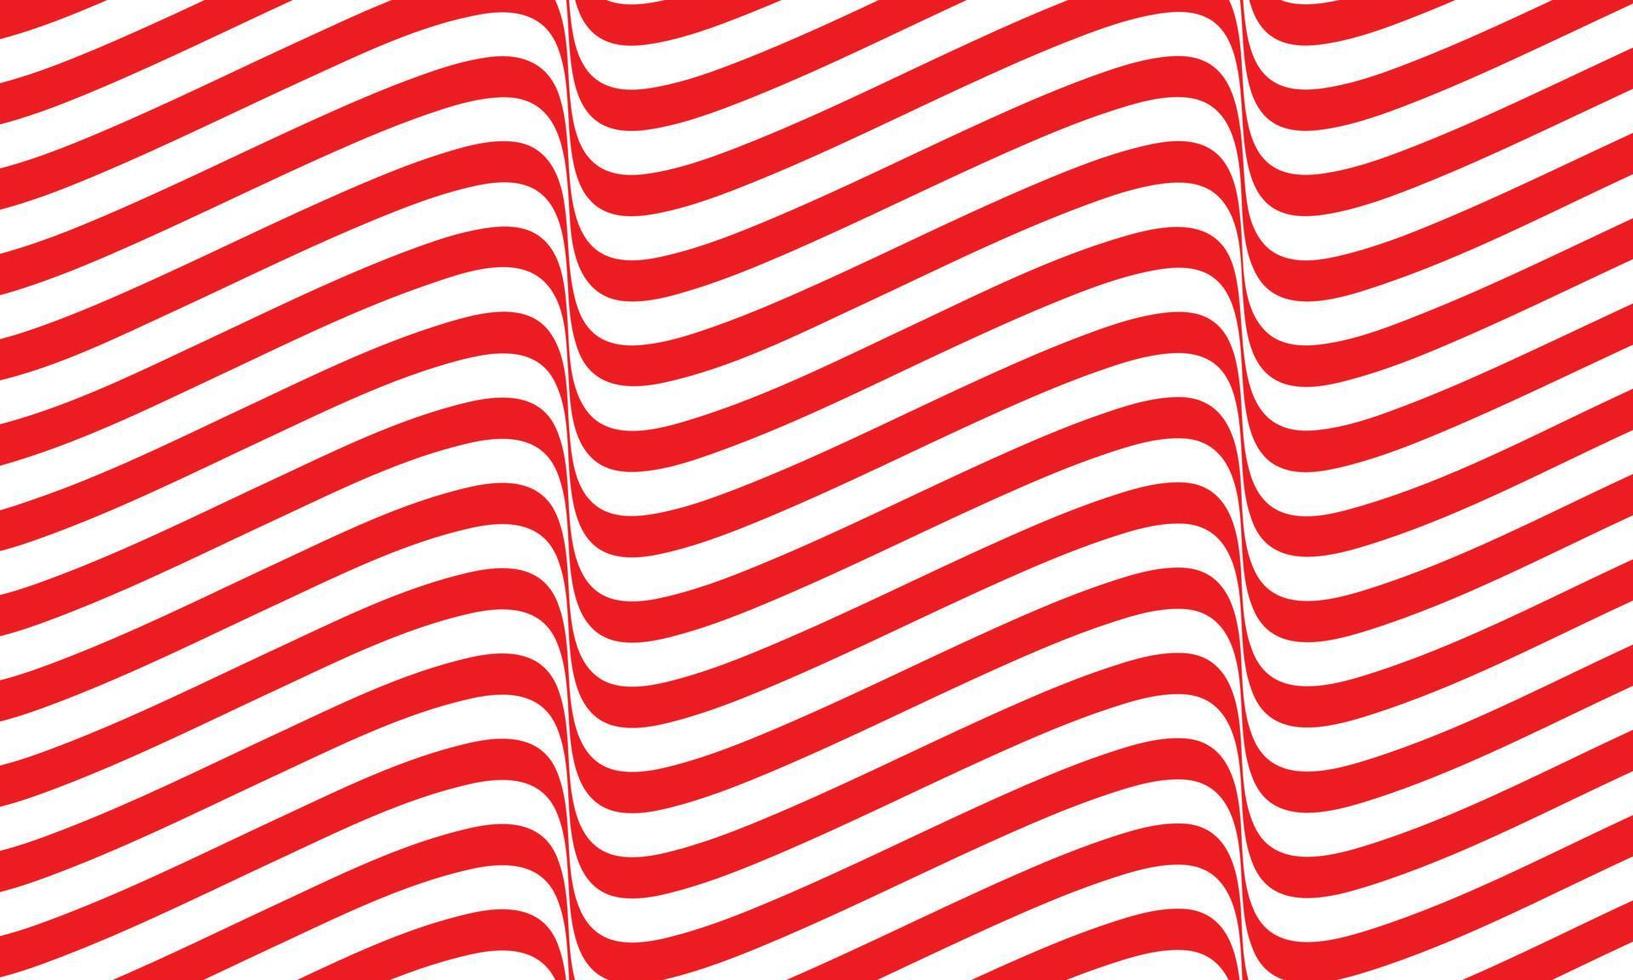 abstracte streepachtergrond in rood en wit met golvend lijnenpatroon. vector